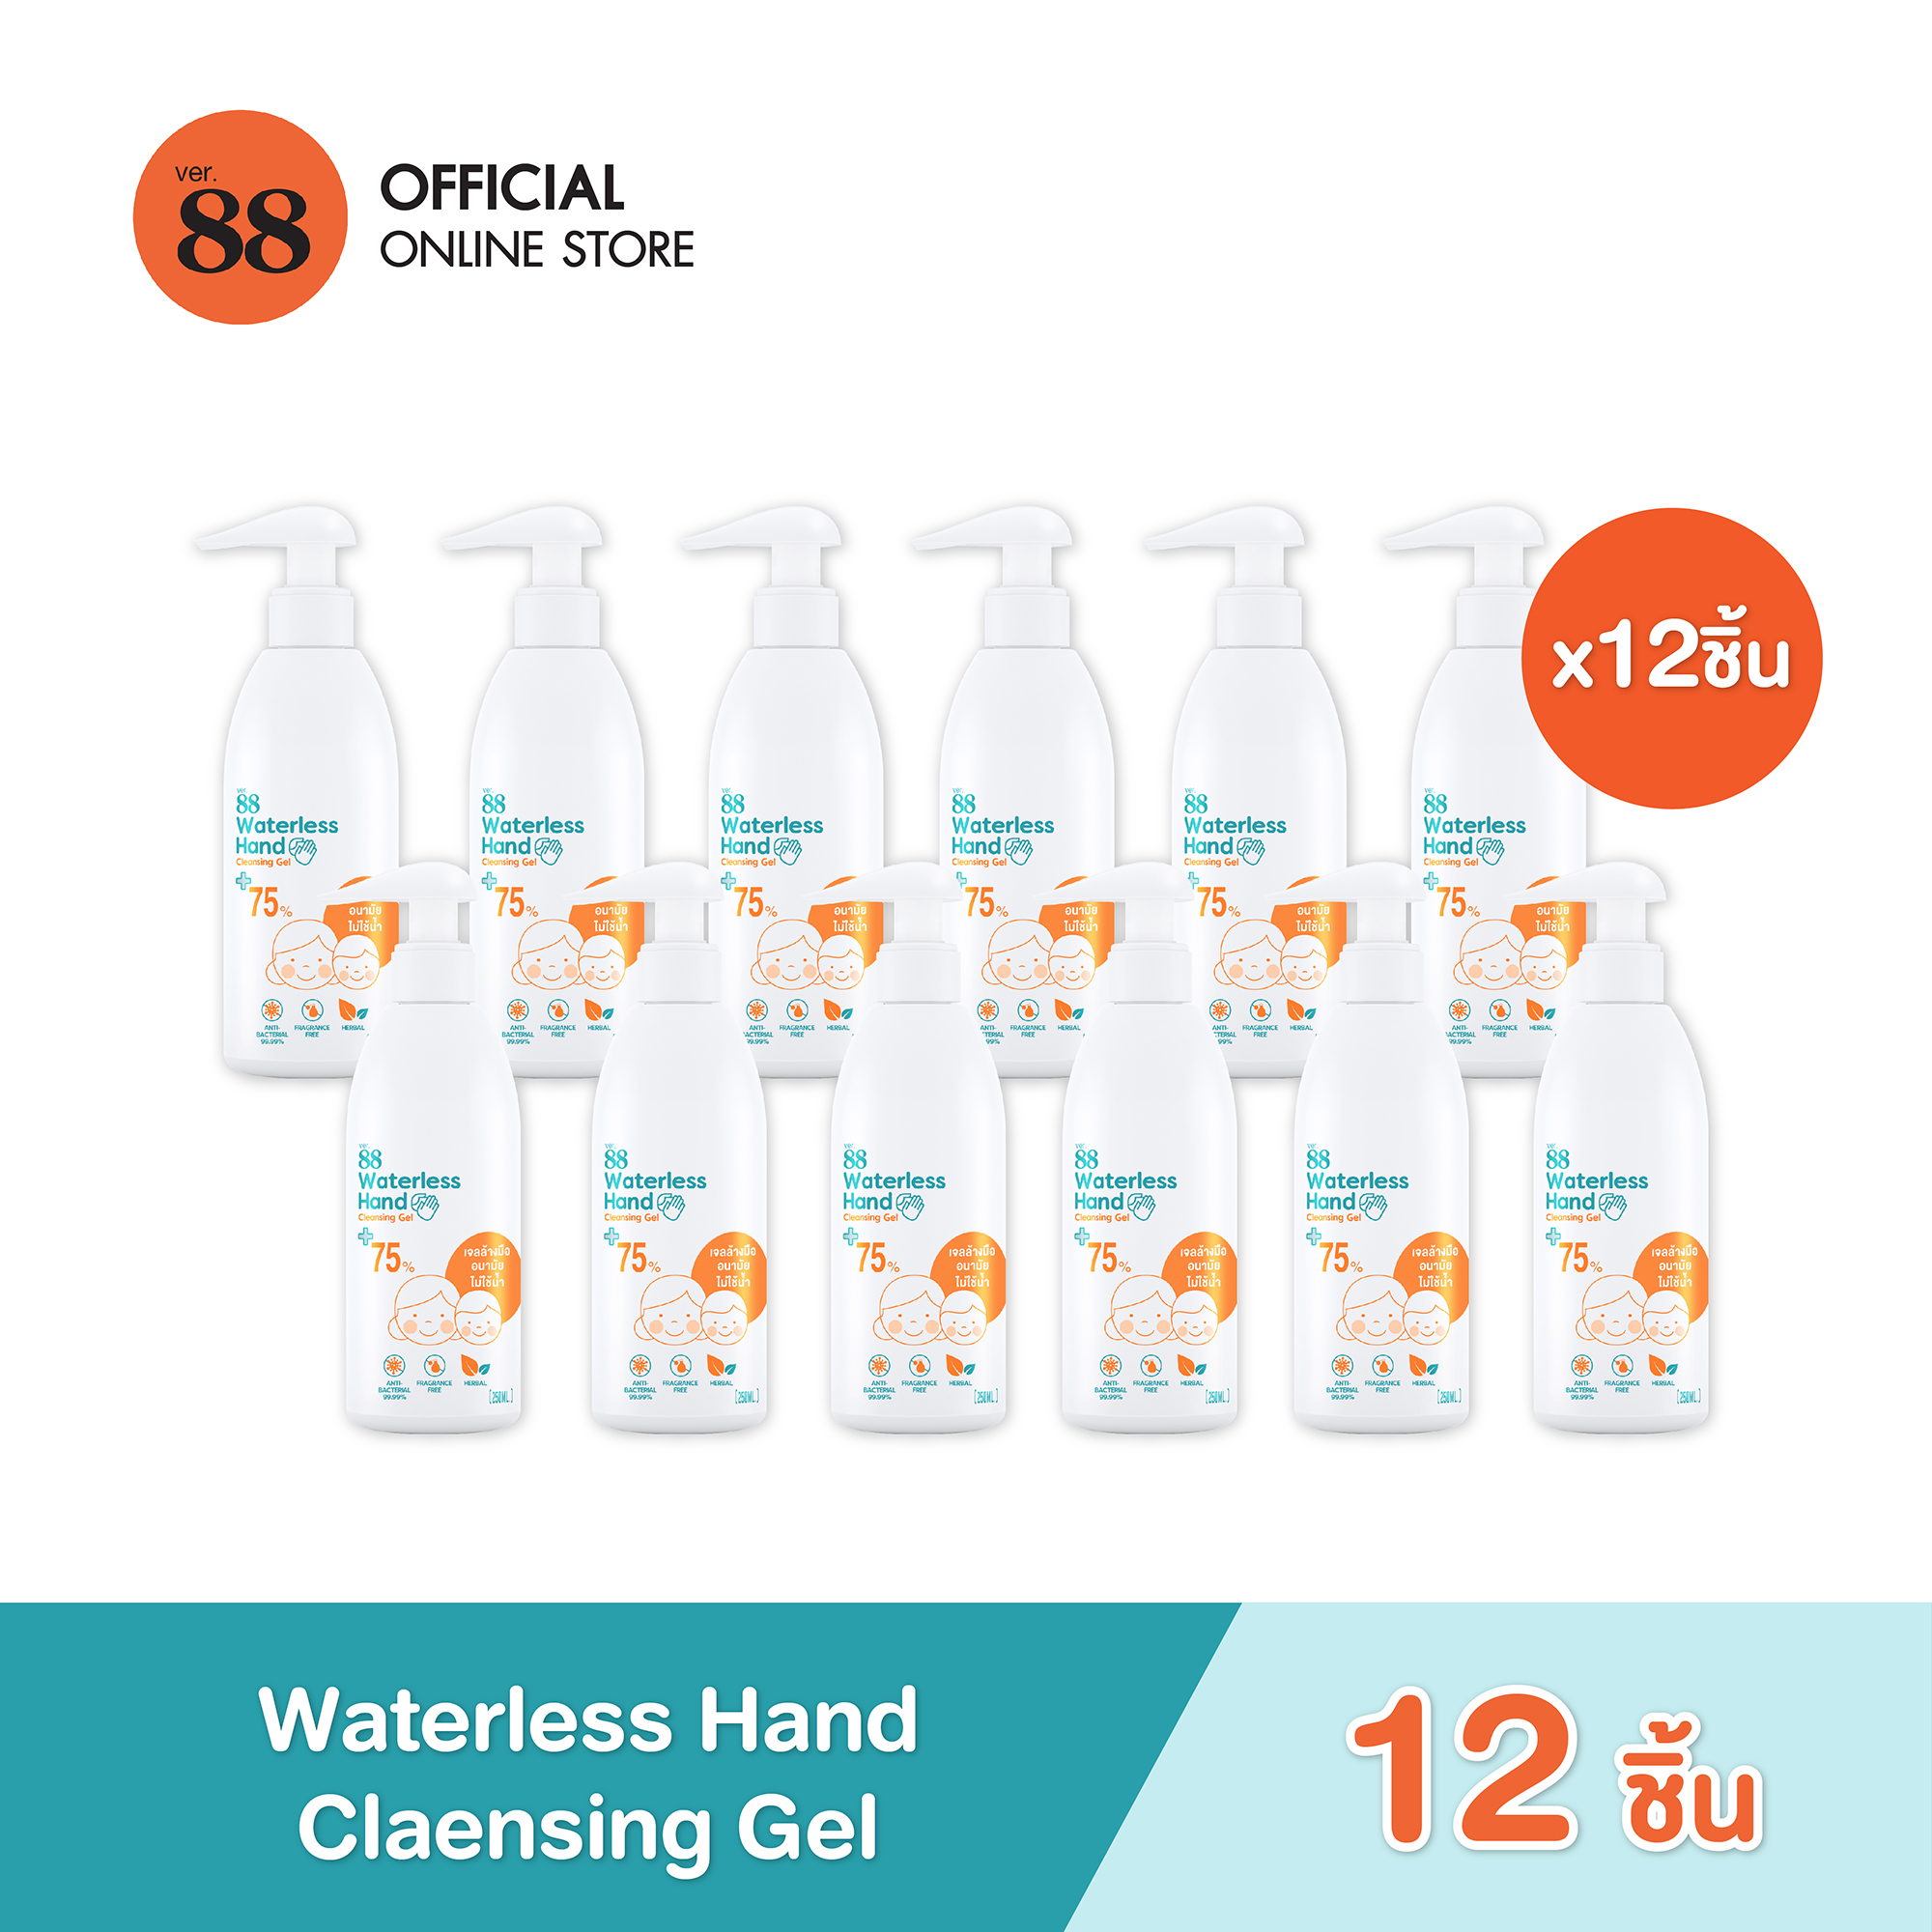 VER.88 WATERLESS HAND CLEANSING GEL (250 ML)